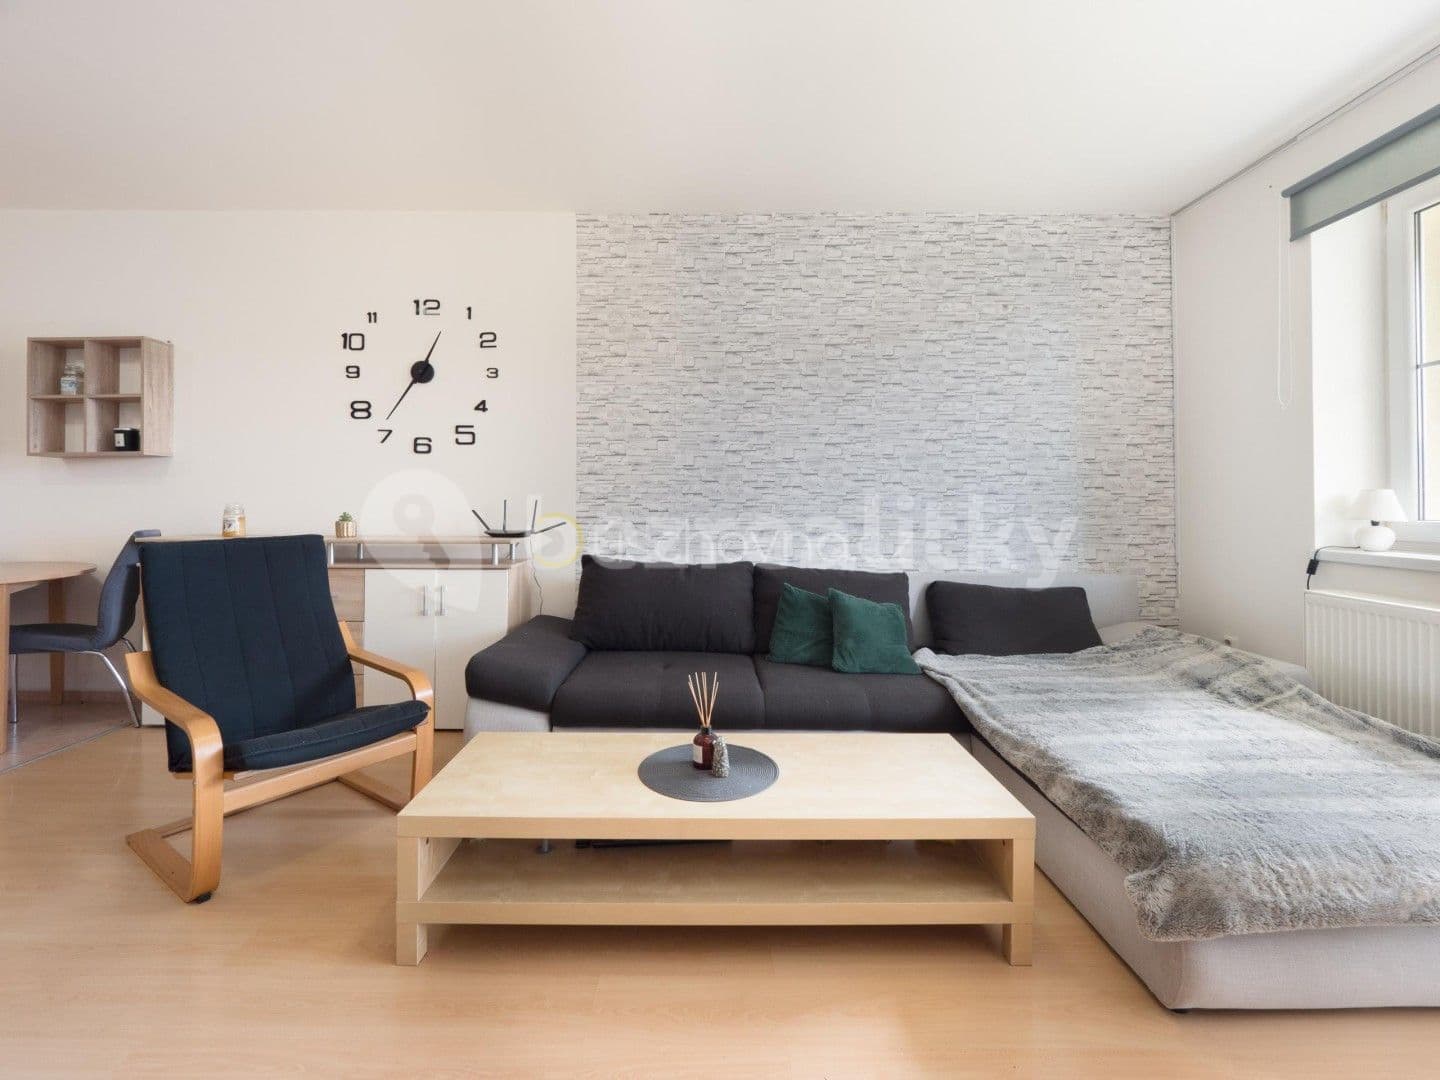 1 bedroom with open-plan kitchen flat for sale, 50 m², Nádvorní, Liberec, Liberecký Region